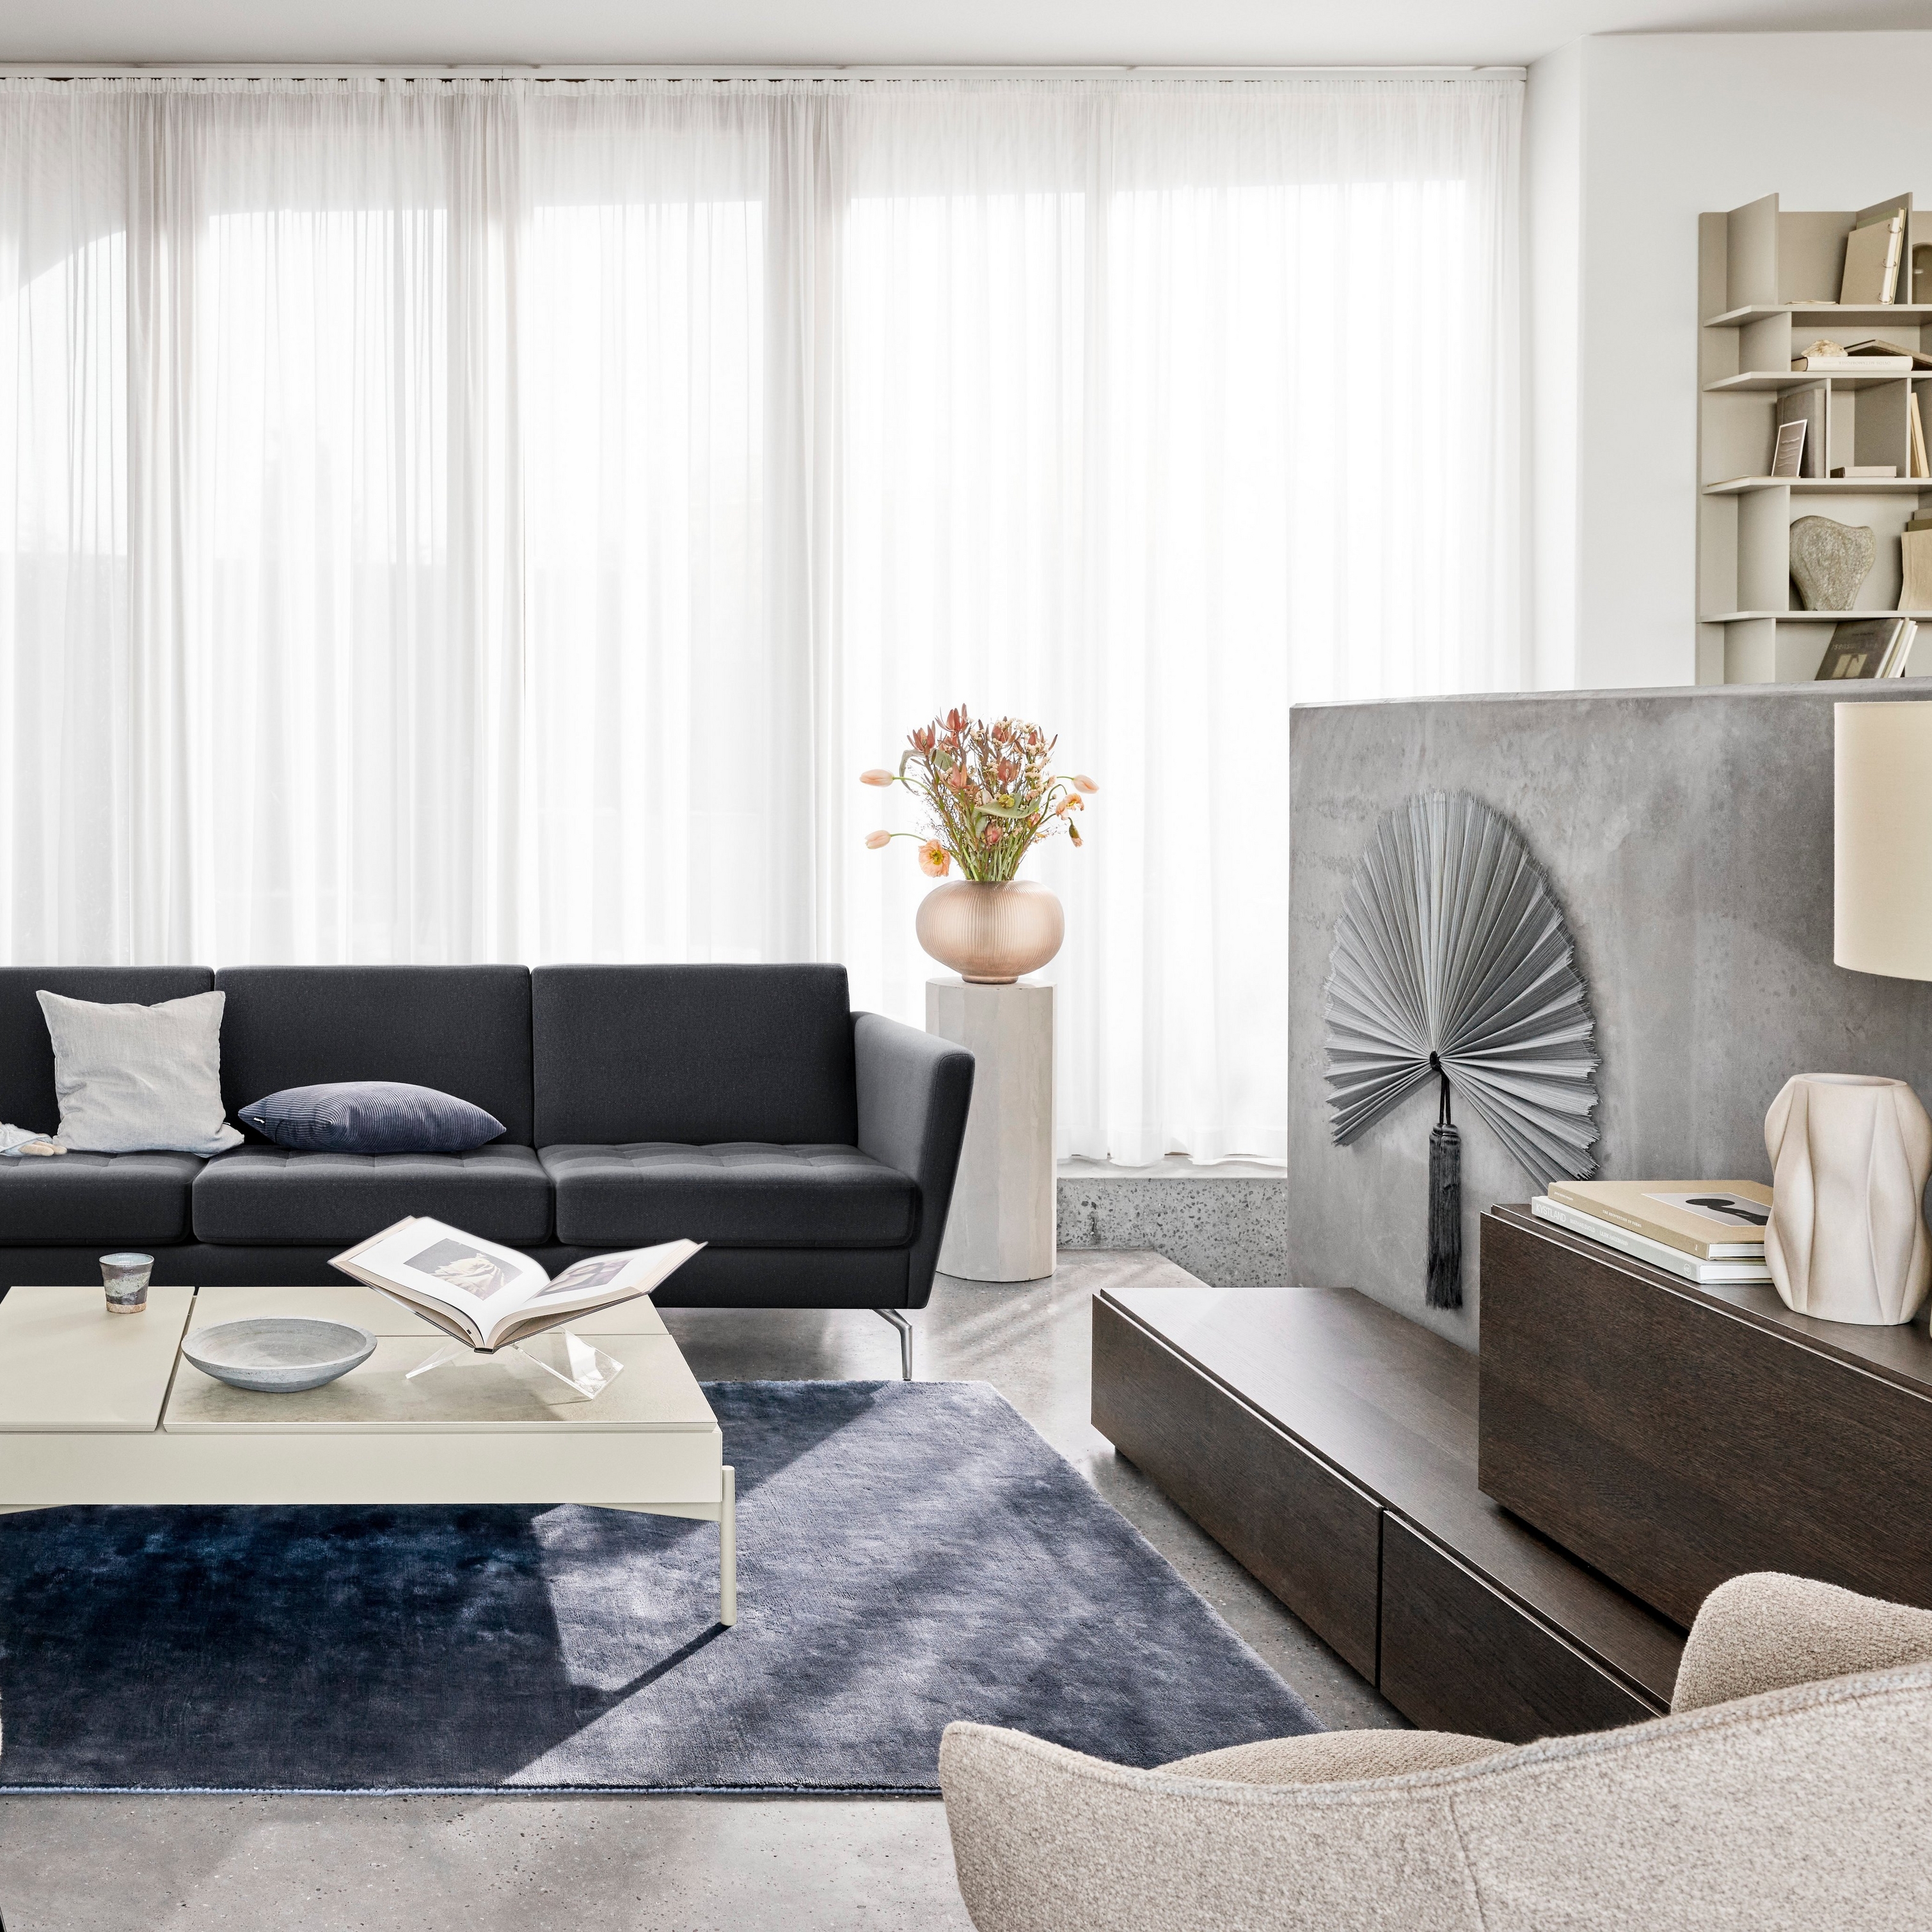 现代起居空间布置着黑色沙发、椅子、透明窗帘和装饰元素。